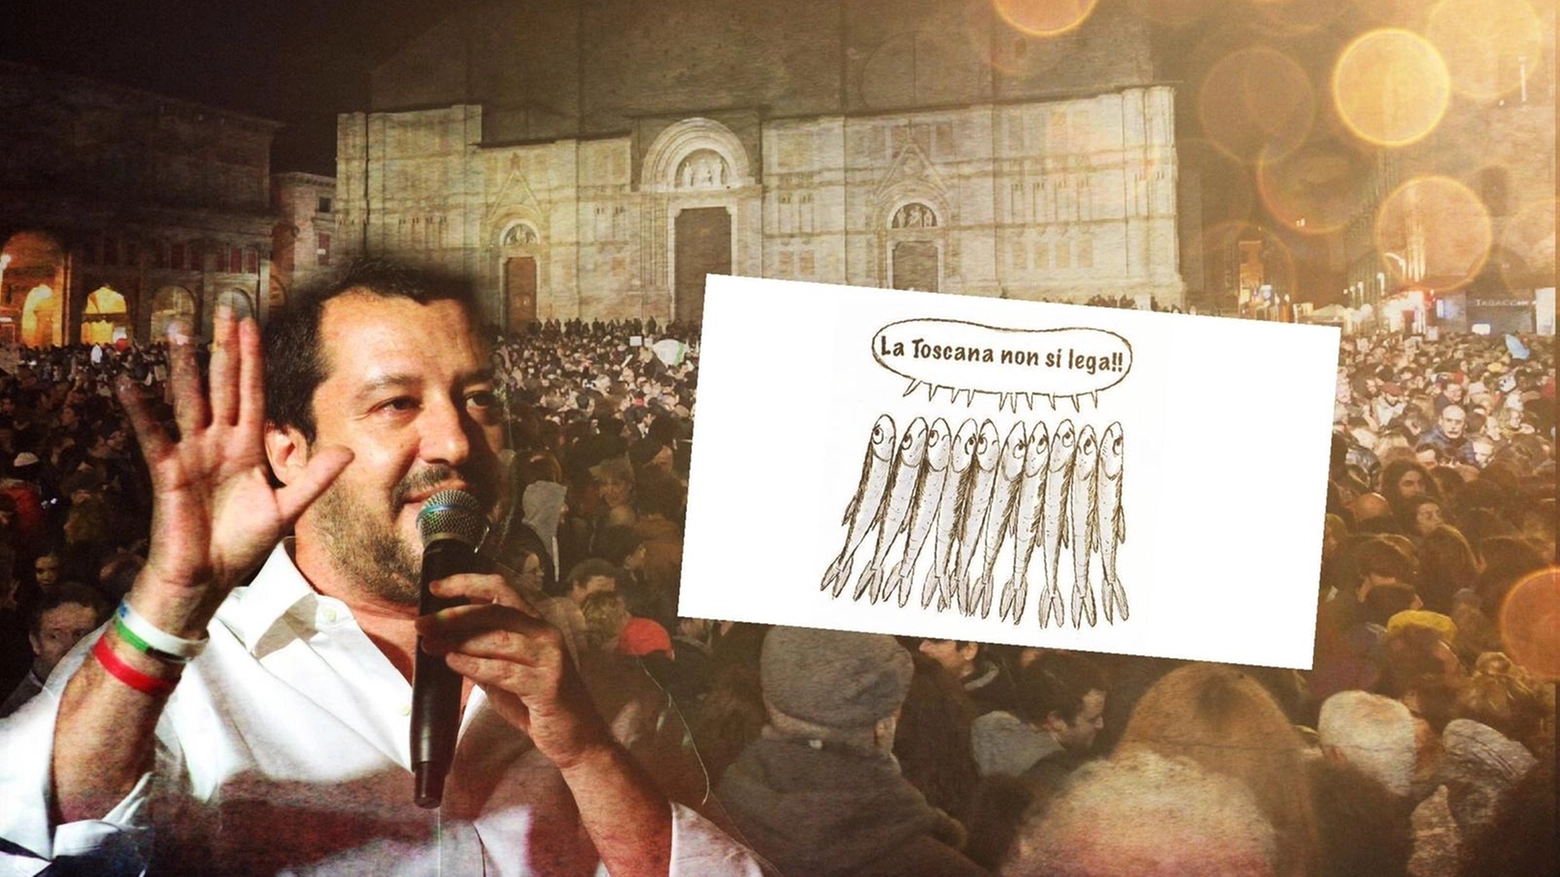 Matteo Salvini in Toscana: torna la sfida delle piazze